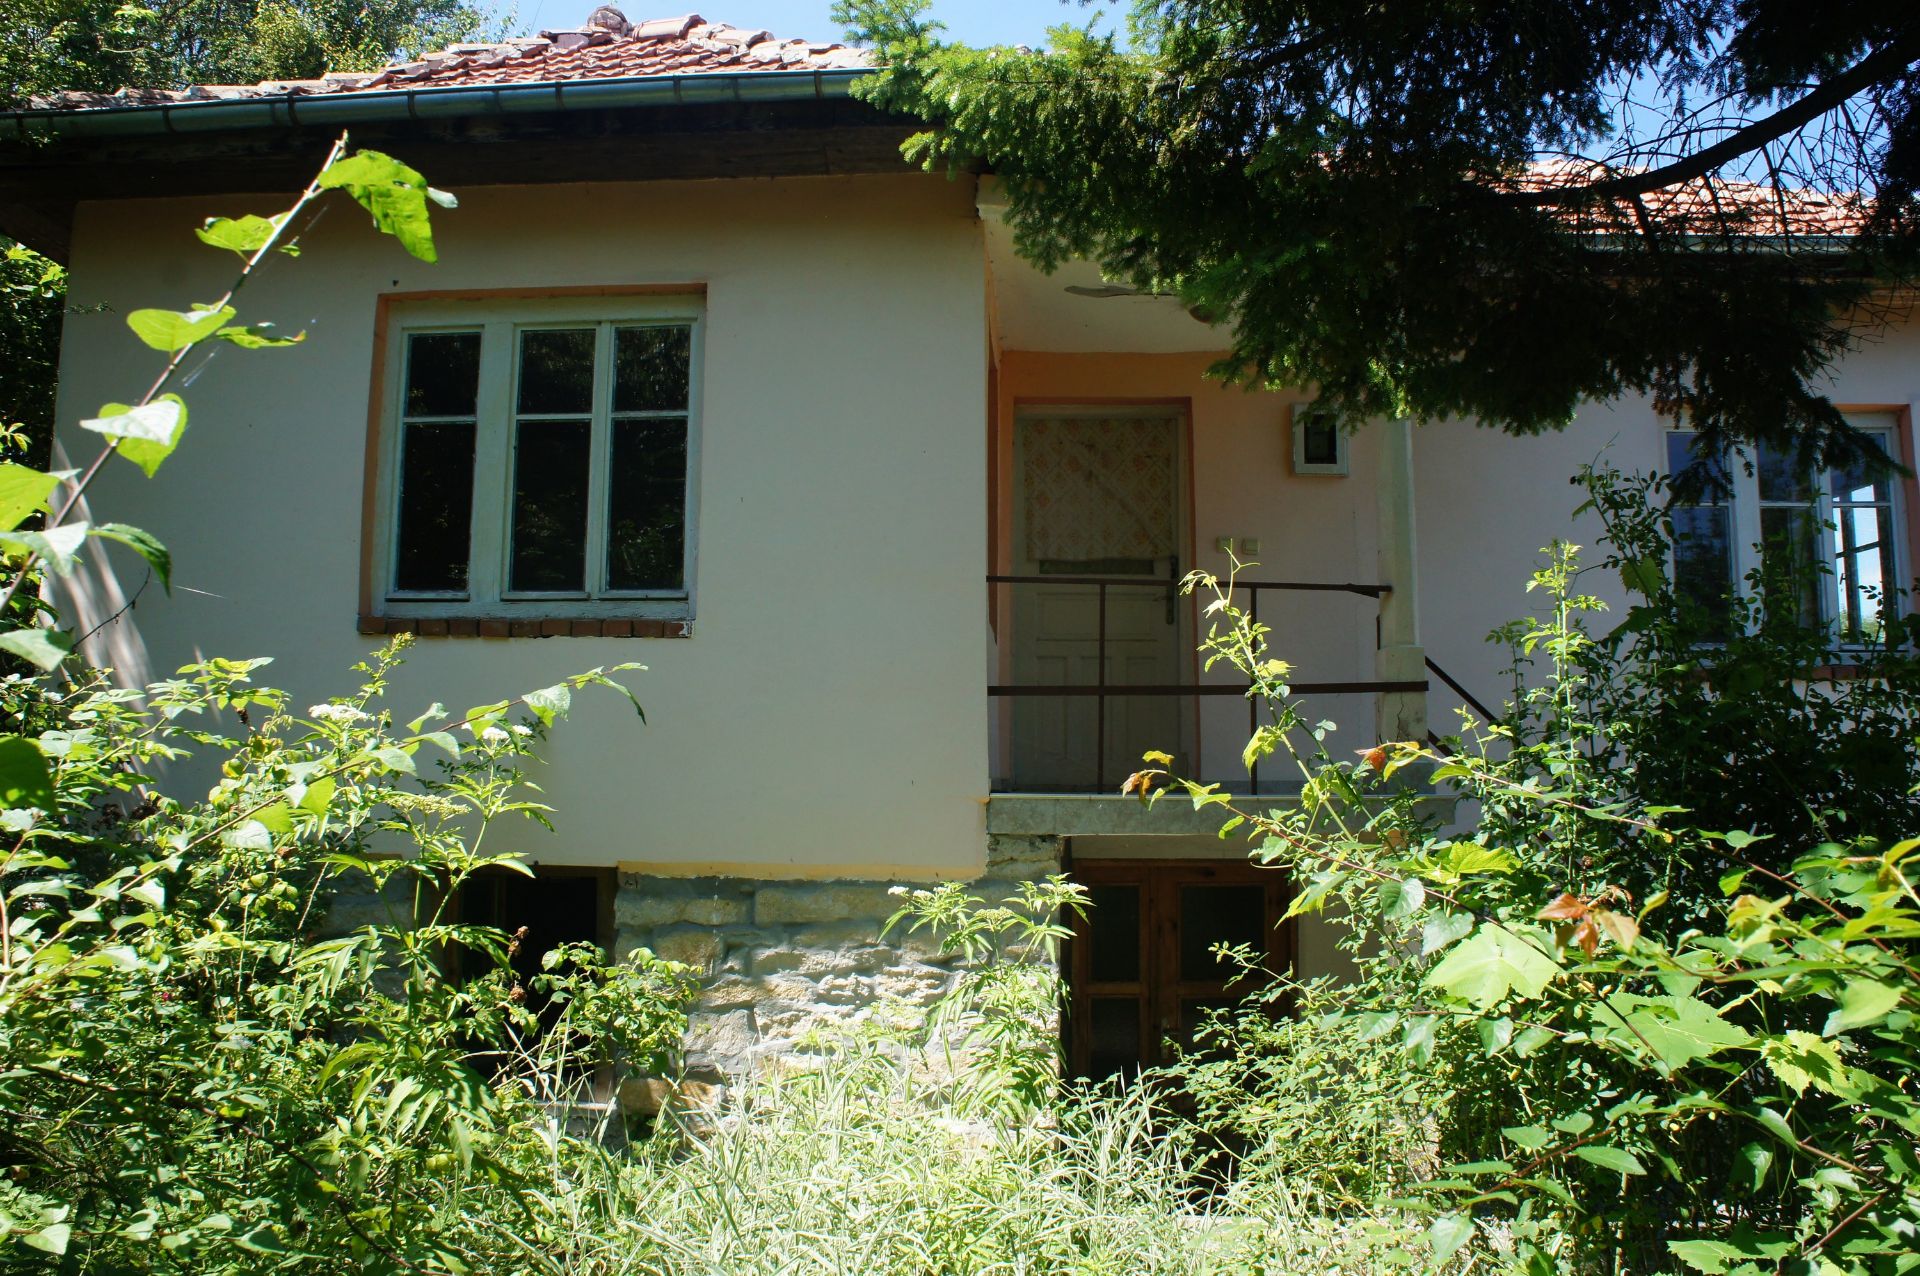 IMMACULATE Freehold Home and Land NR Veliko Tarnovo, Bulgaria - Image 6 of 29